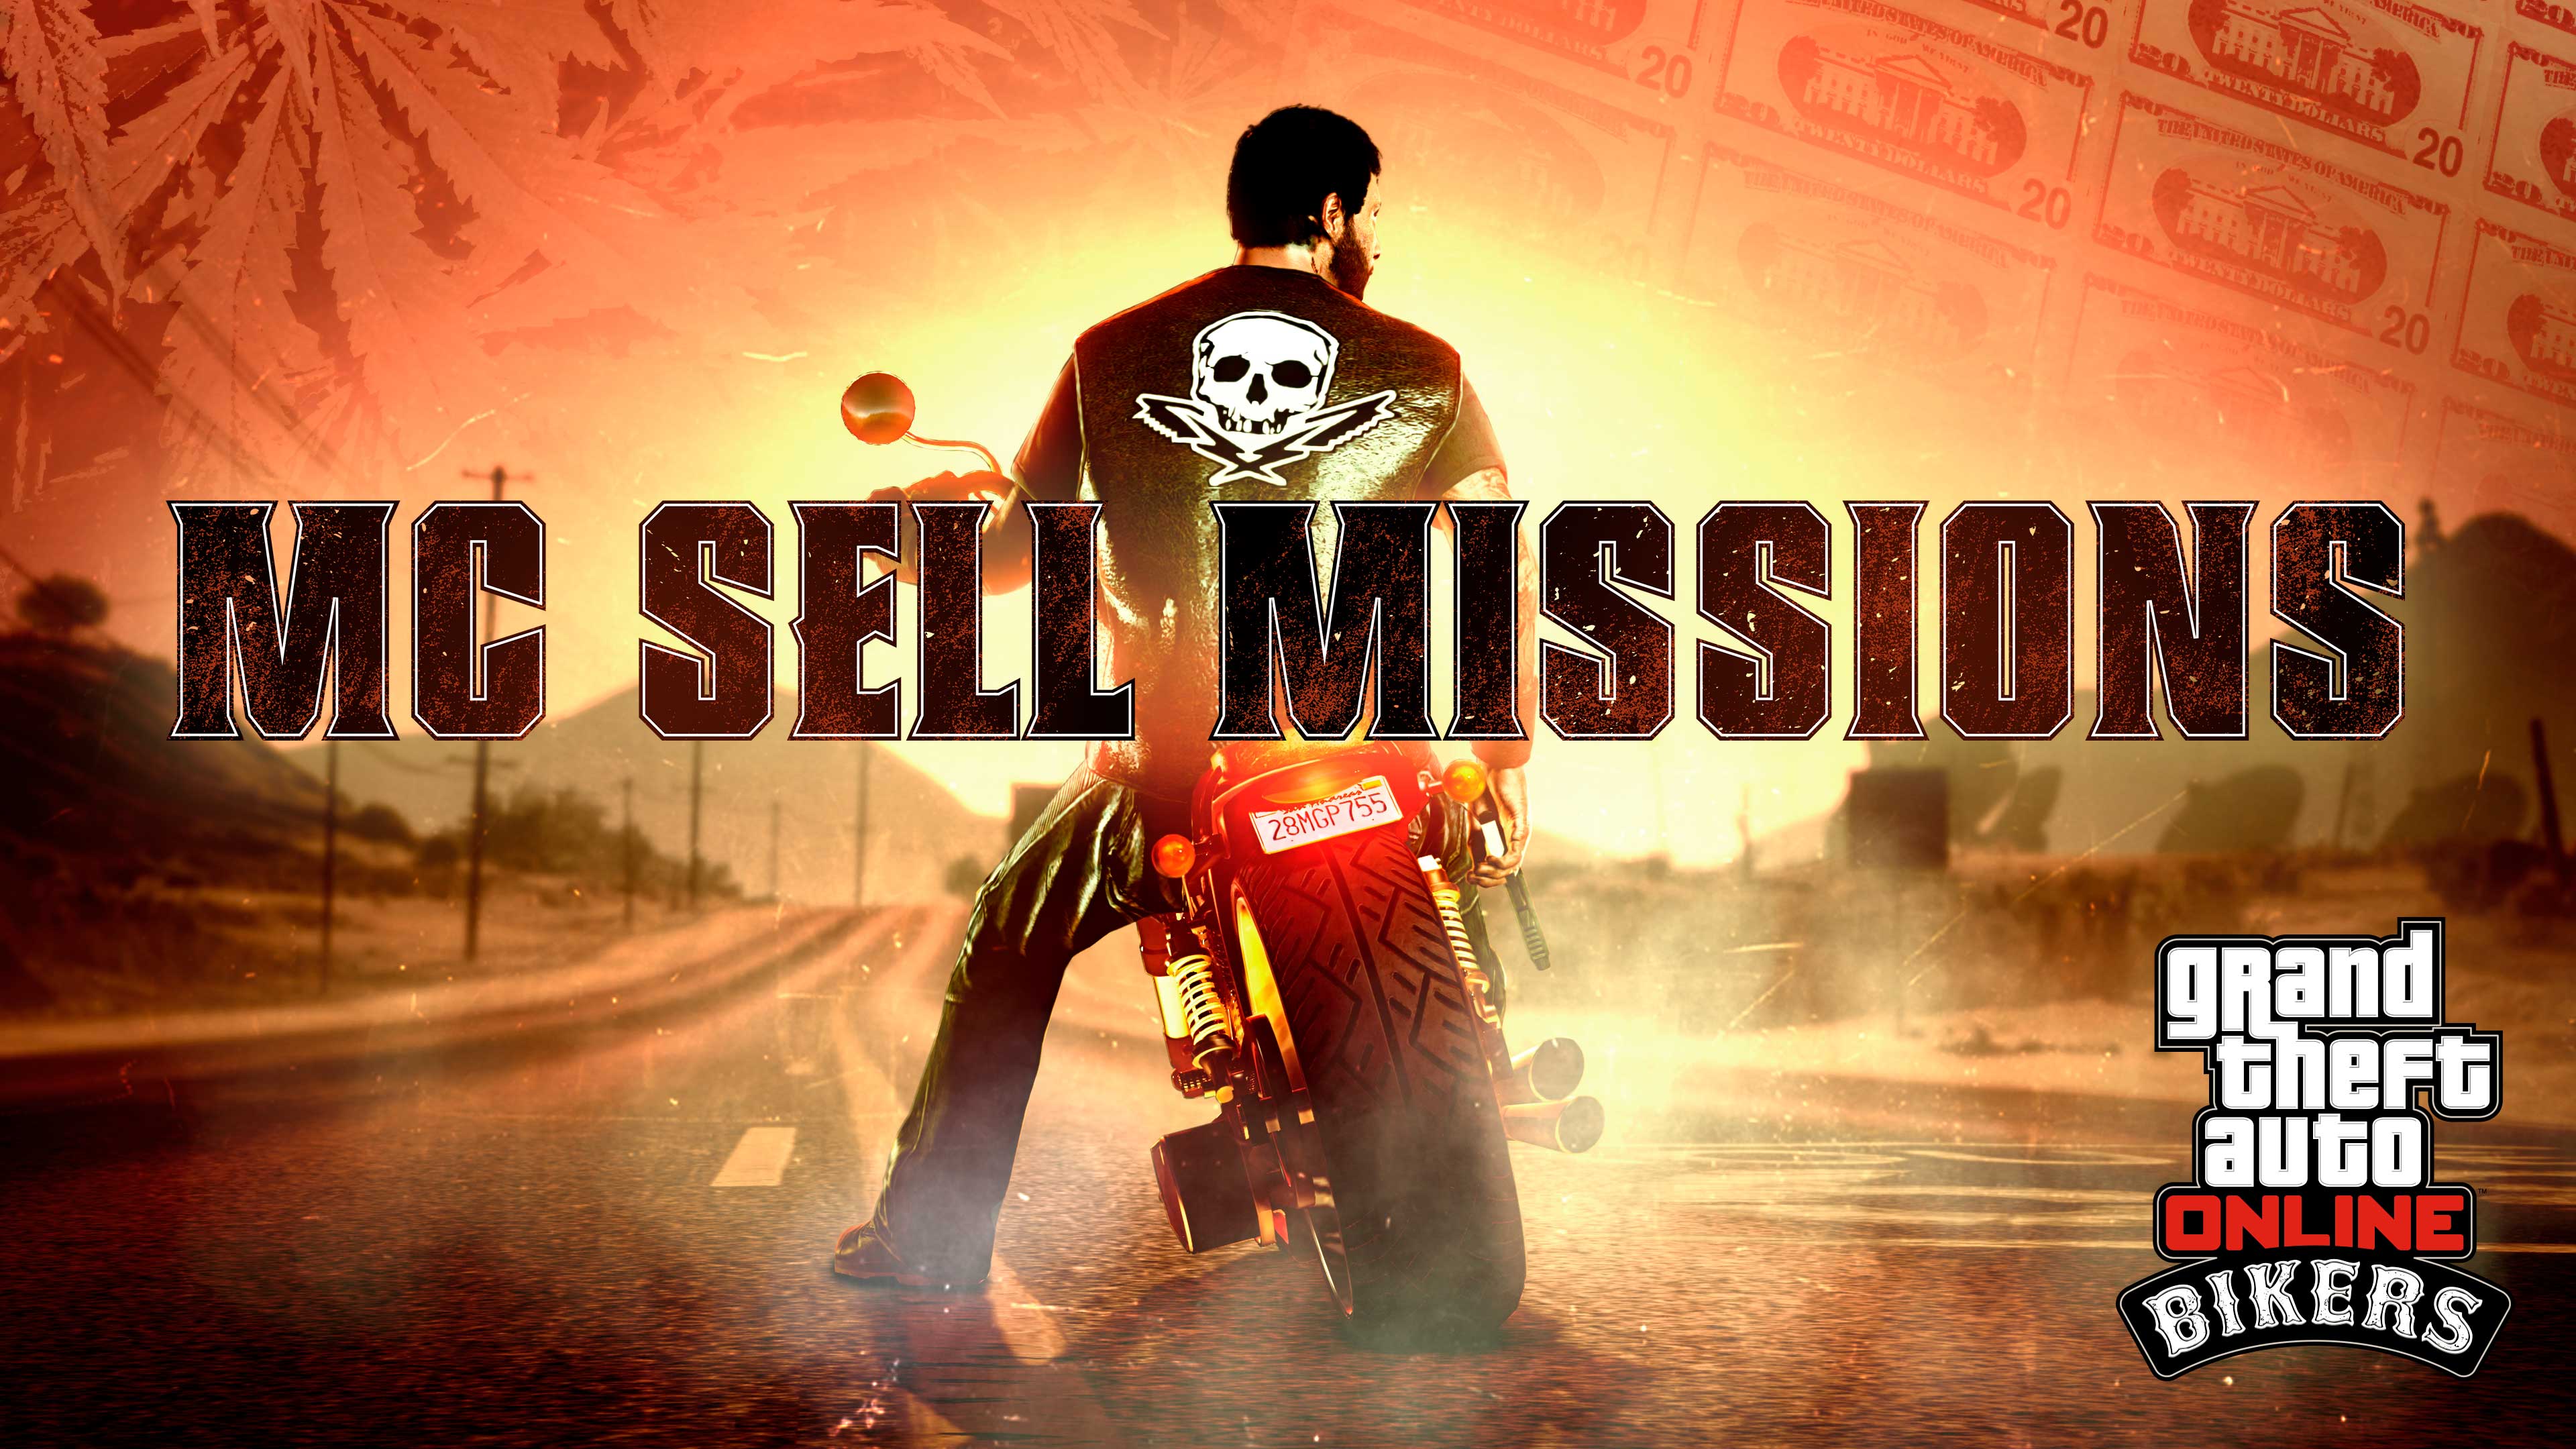 Imagem de Motoqueiro em cima de uma moto no GTA Online com logotipo de Missões de Venda de MC